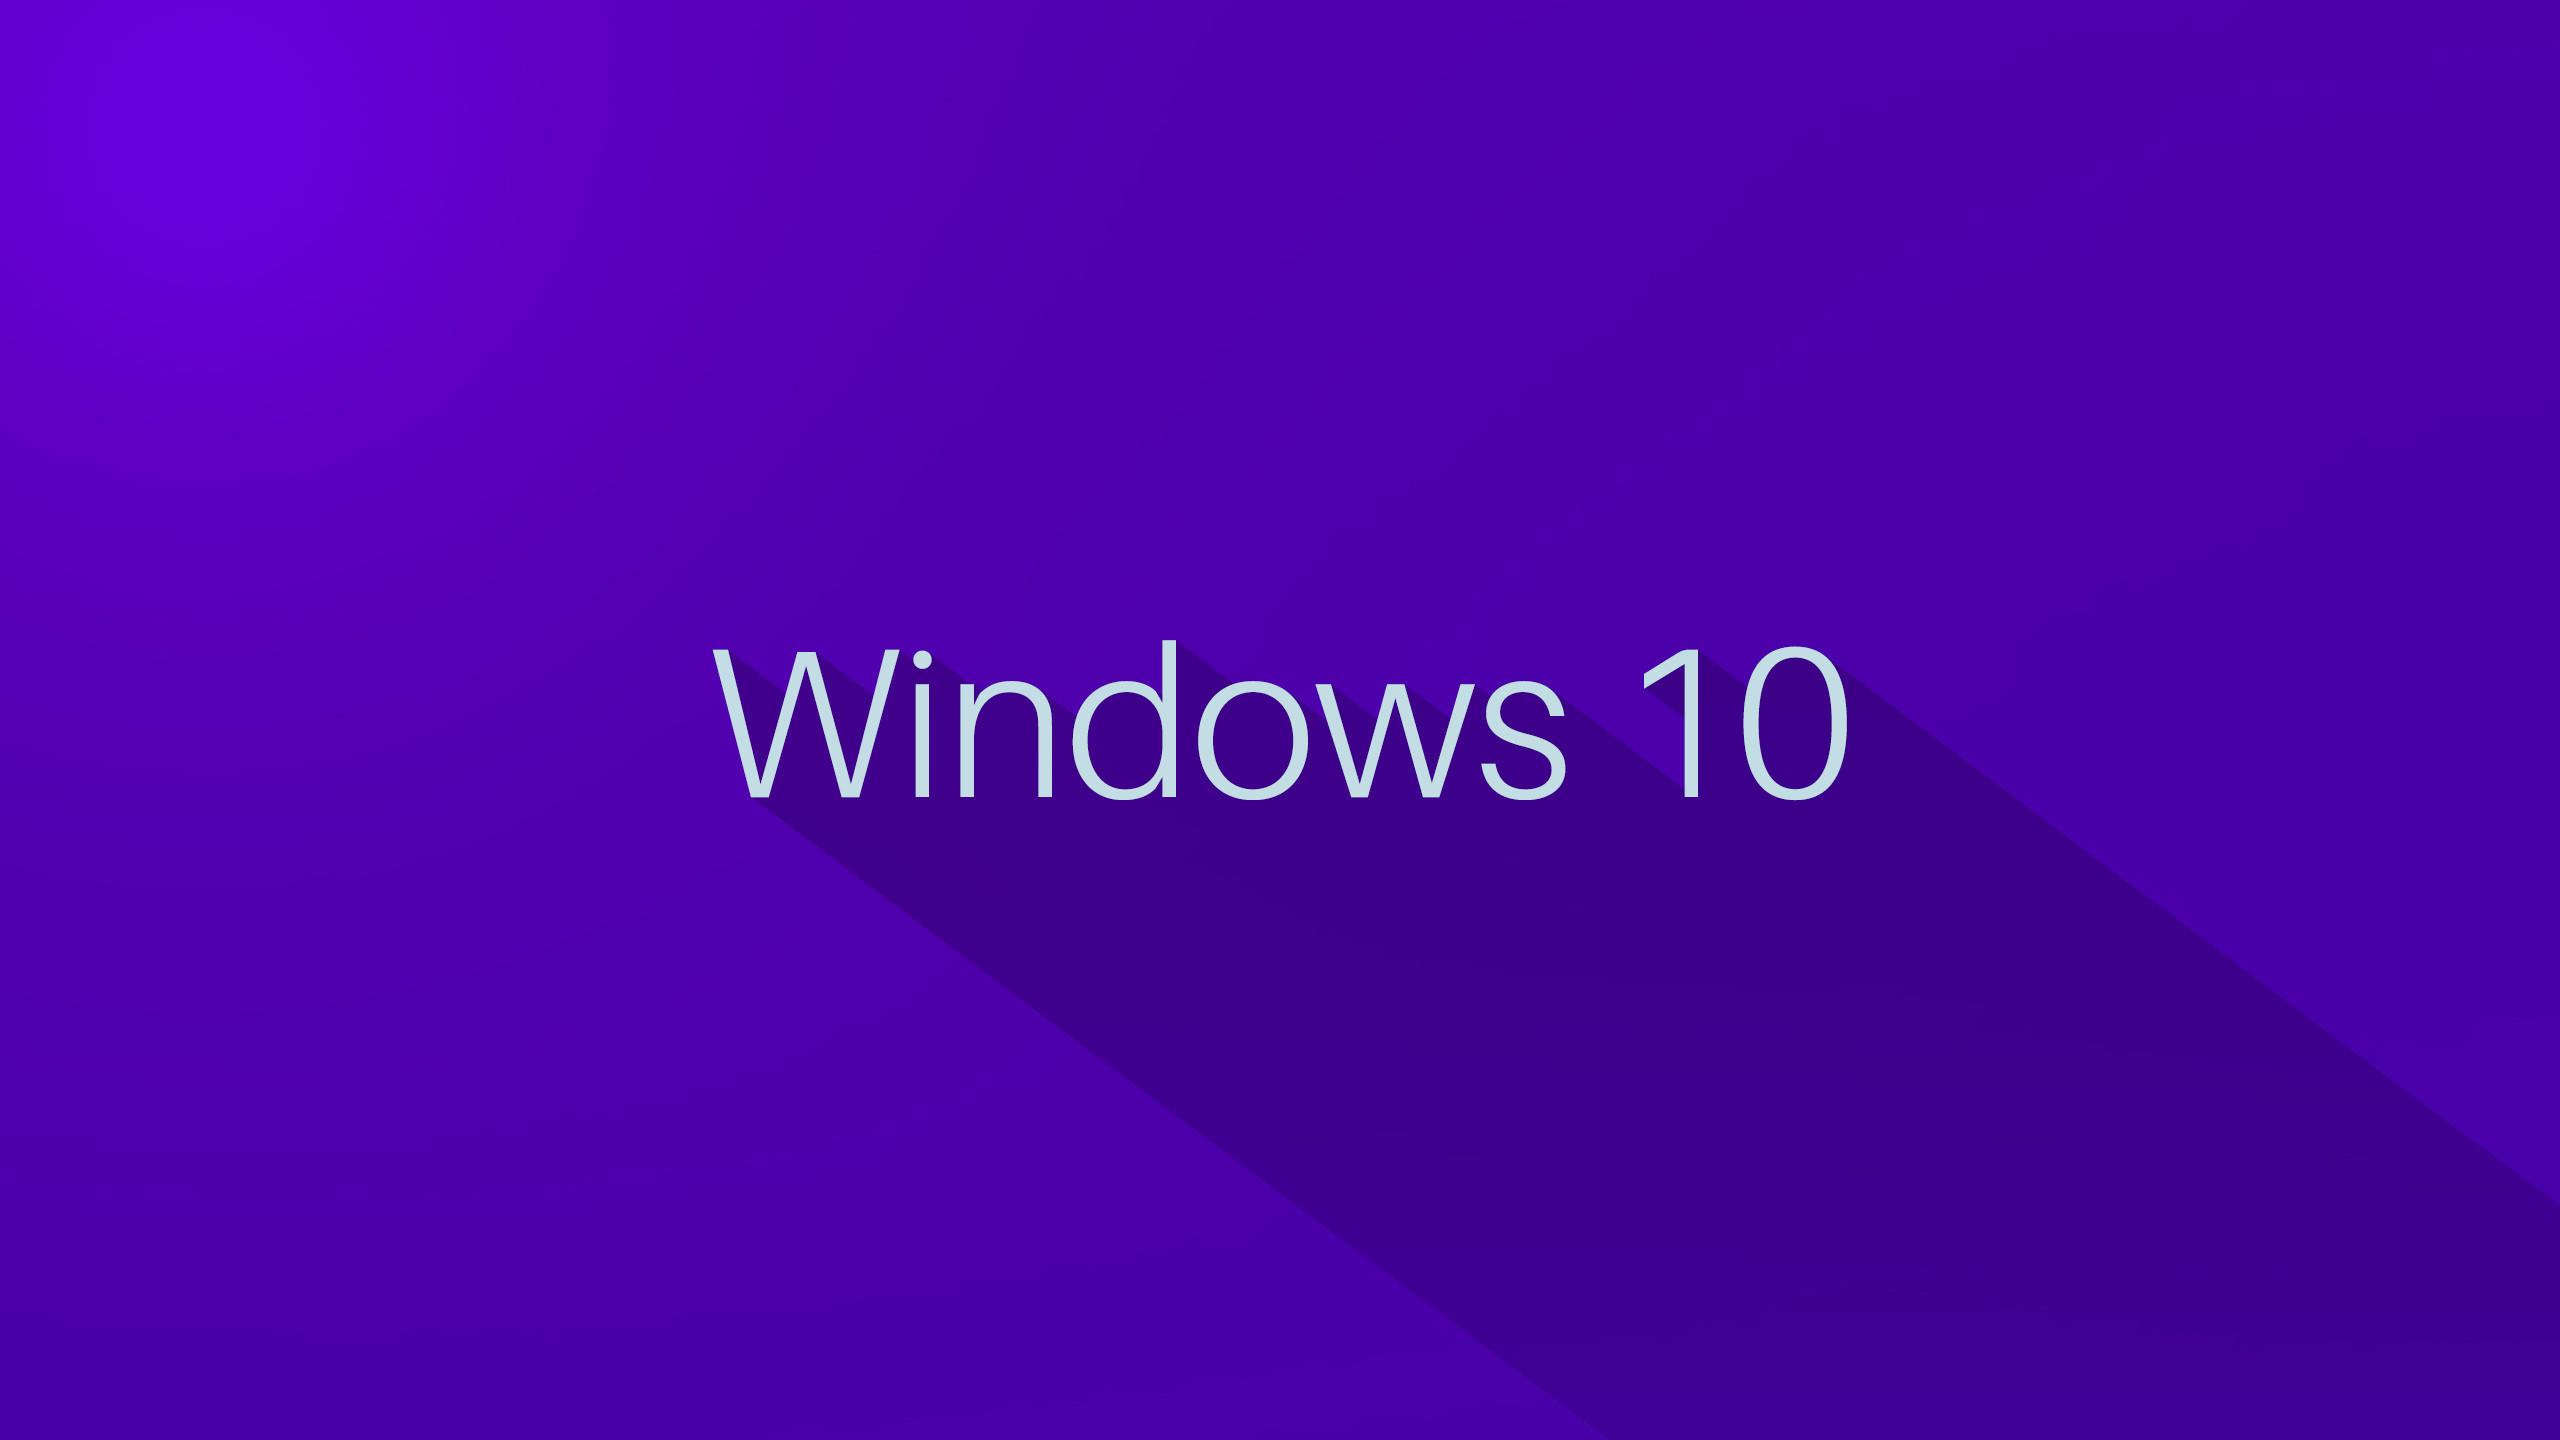 2560x1440 Windows 10 Desktop Wallpaper | HDWalllpapers.com | lumia | Pinterest |  Windows 10